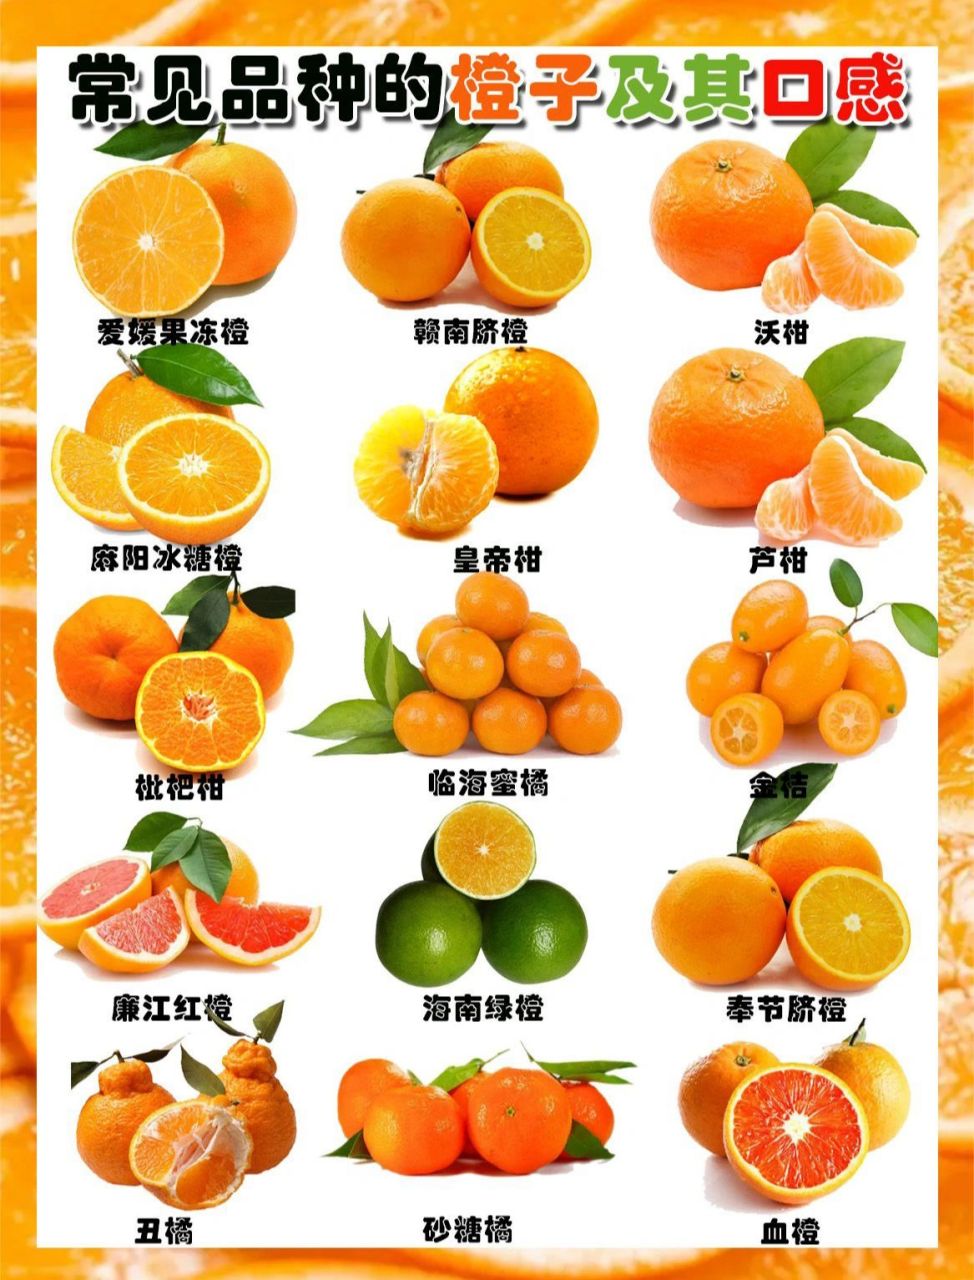 柑果的种类图片